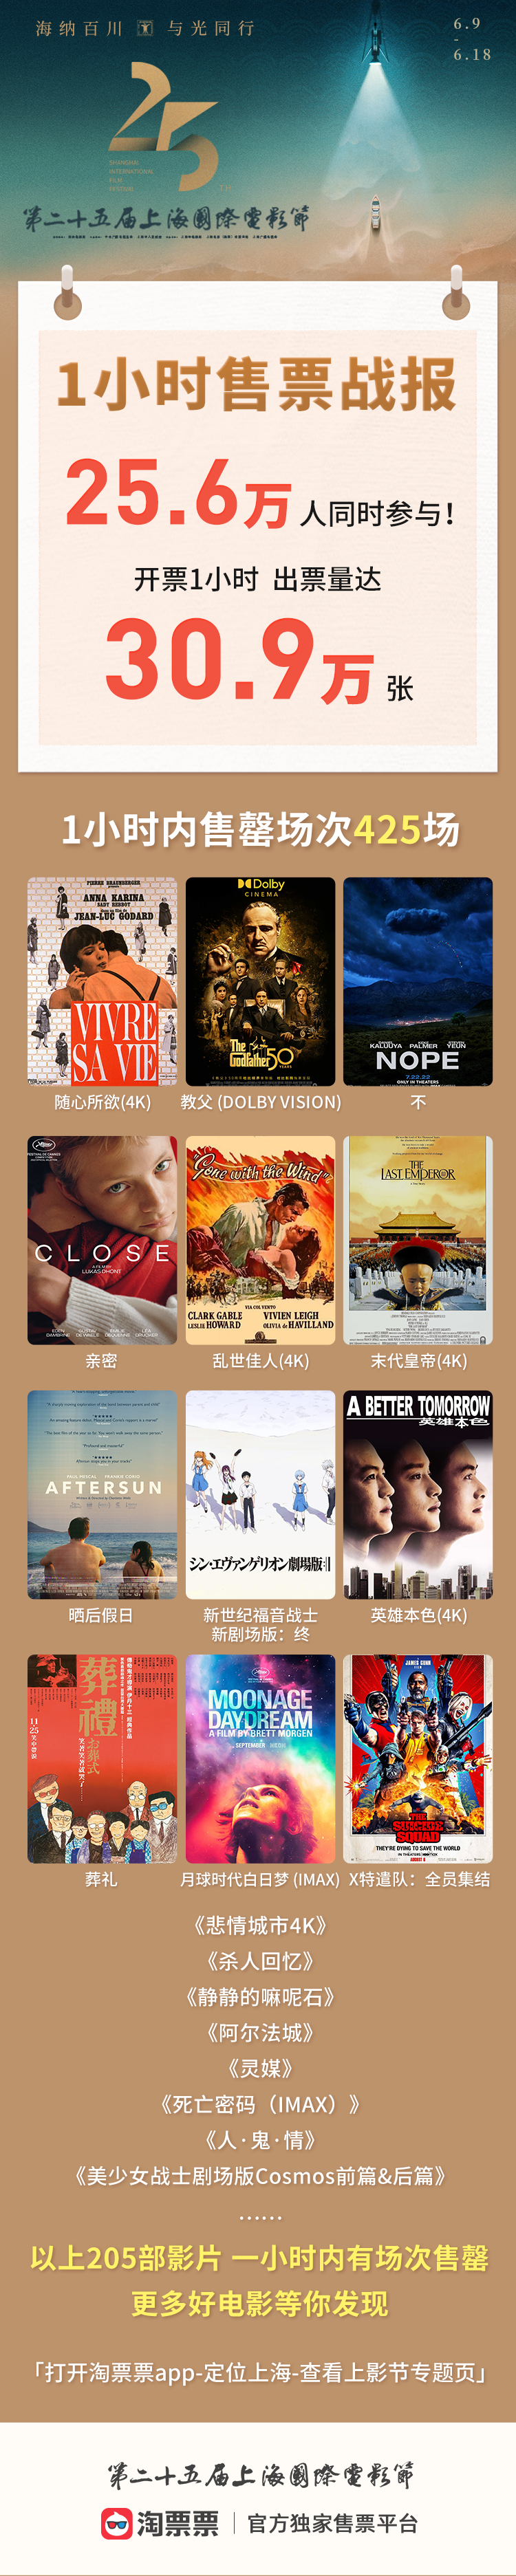 第二十五届上海国际电影节开票1小时数据。数据提供：淘票票